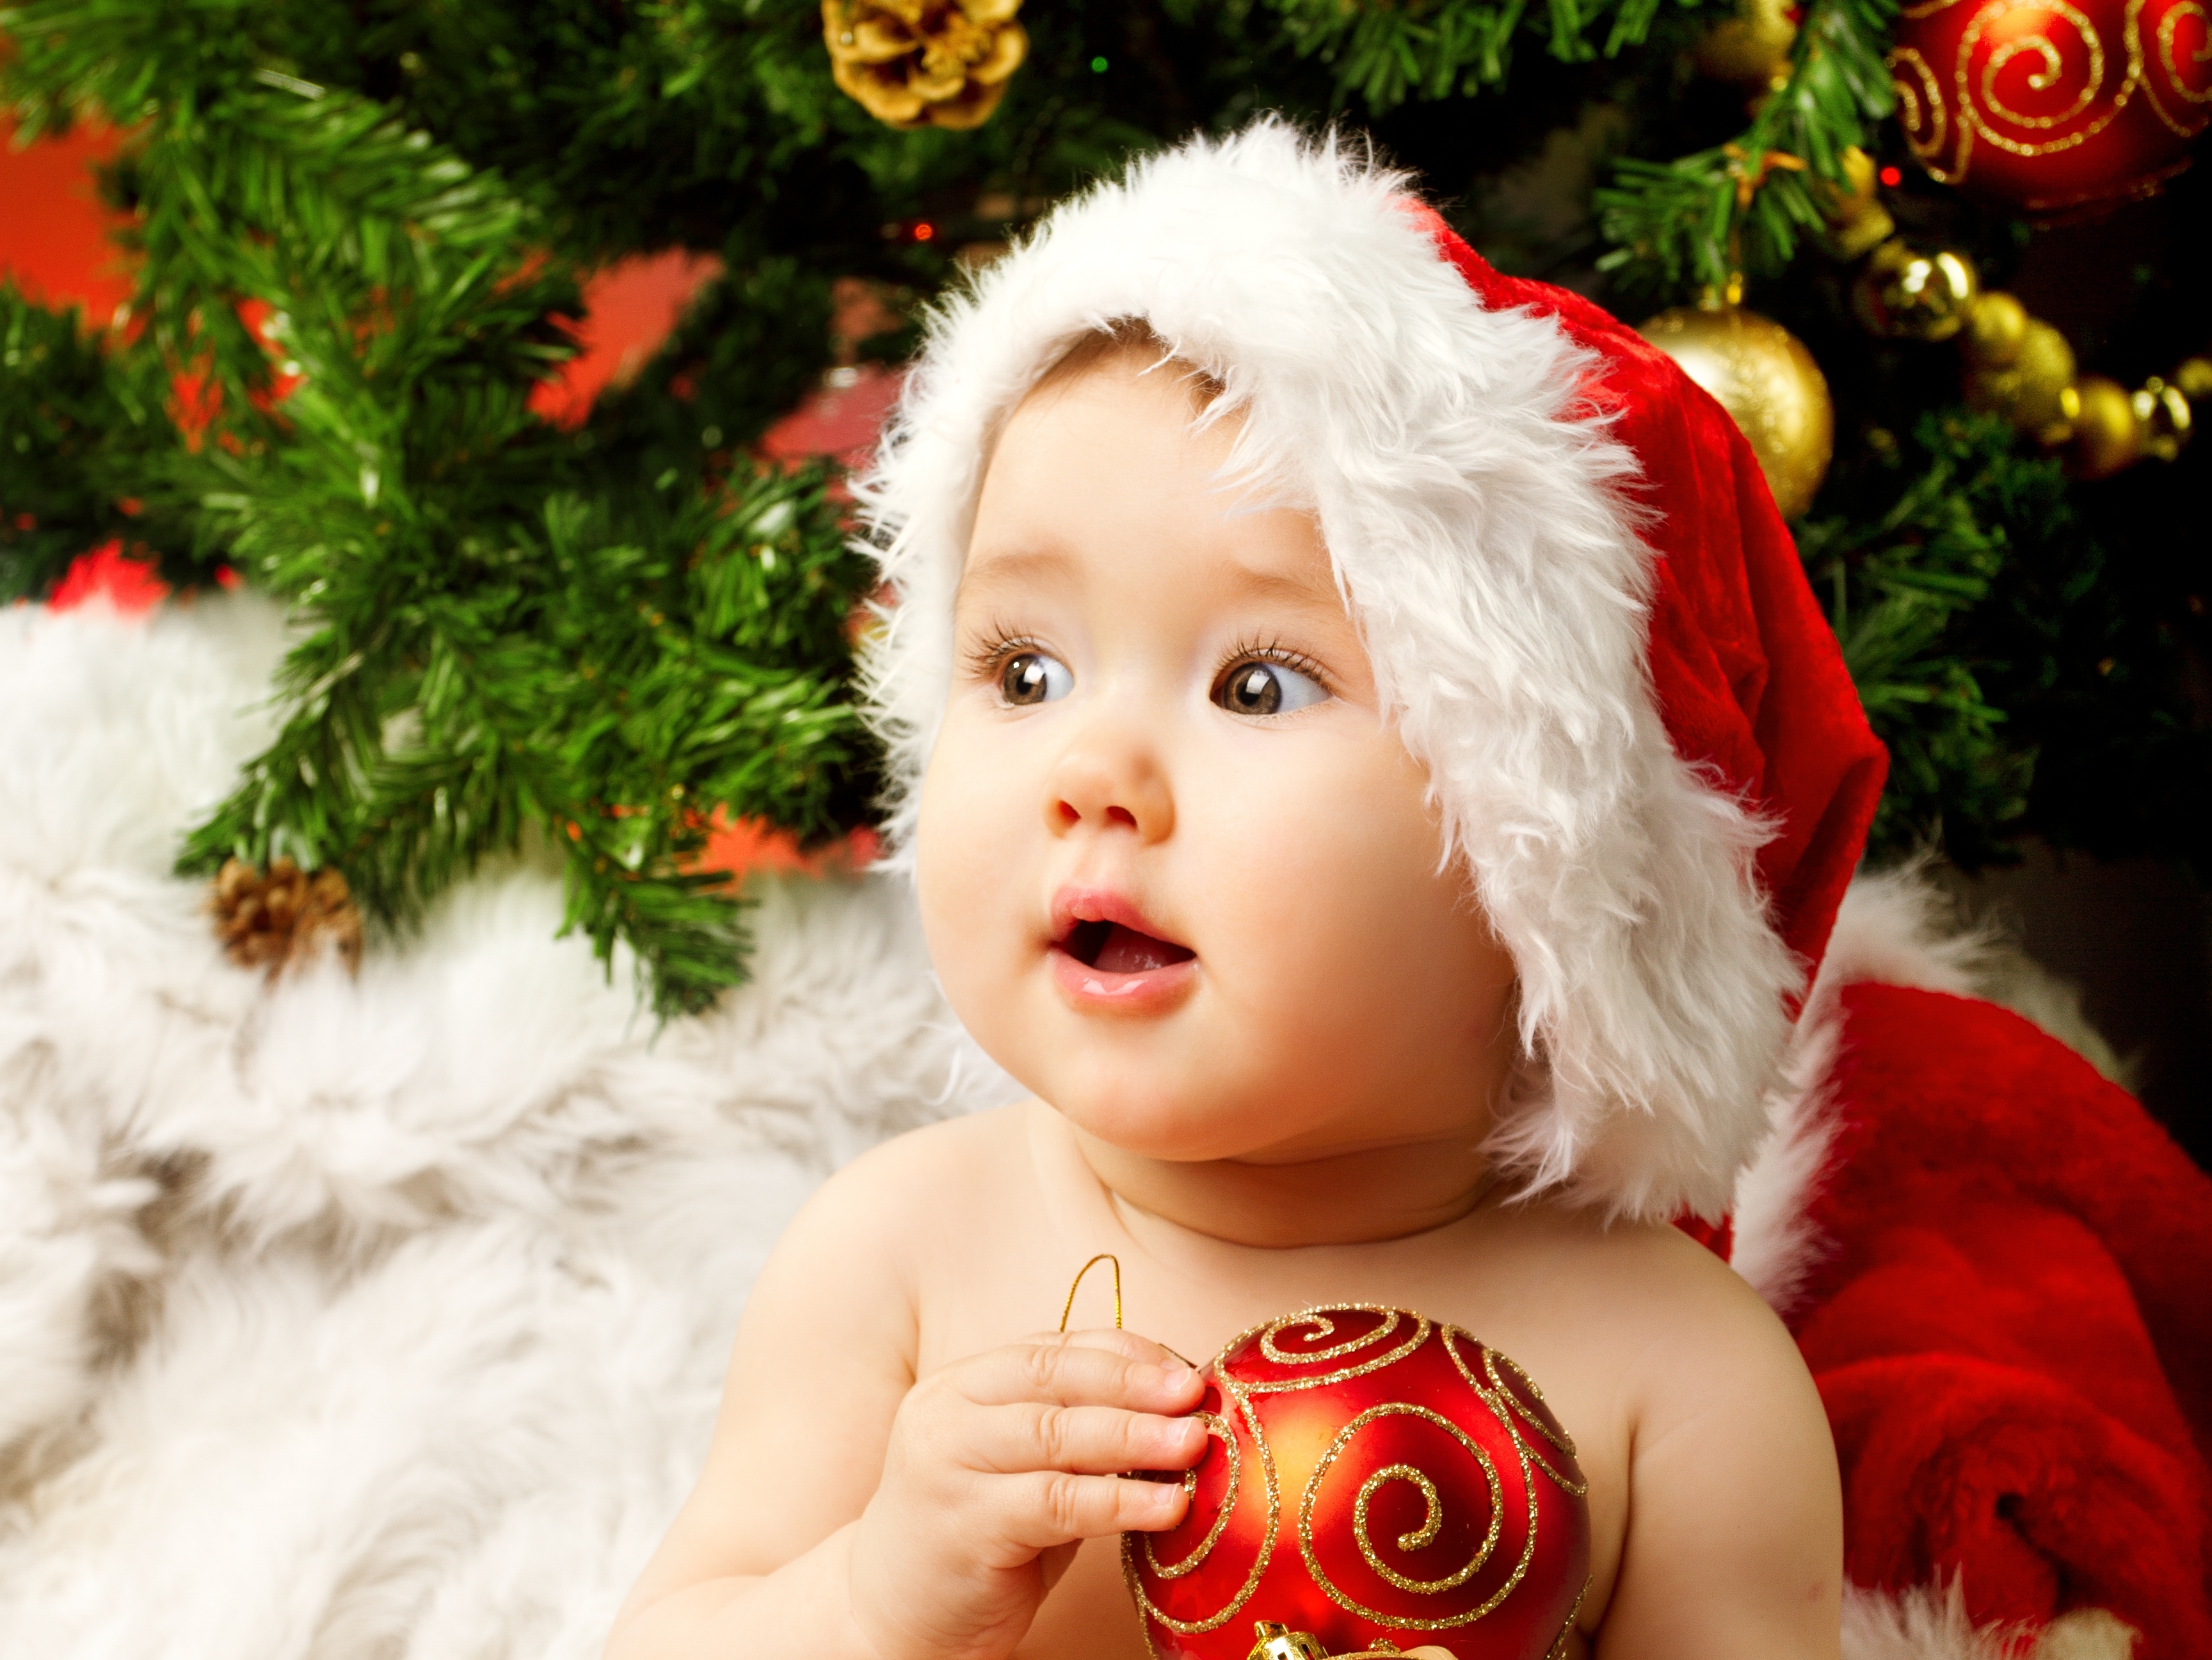 adorable, amazing little girl, baby, beautiful, children, christmas tree, enjoy, happy, kid, little santa claus Costume, merry christmas, new year, дети, красивая, маленький костюм Санта-Клауса, наслаждайтесь, новогодняя елка, новый год, прелестный, ребёнок, с Рождеством Христовым, счастливые, удивительная маленькая девочка